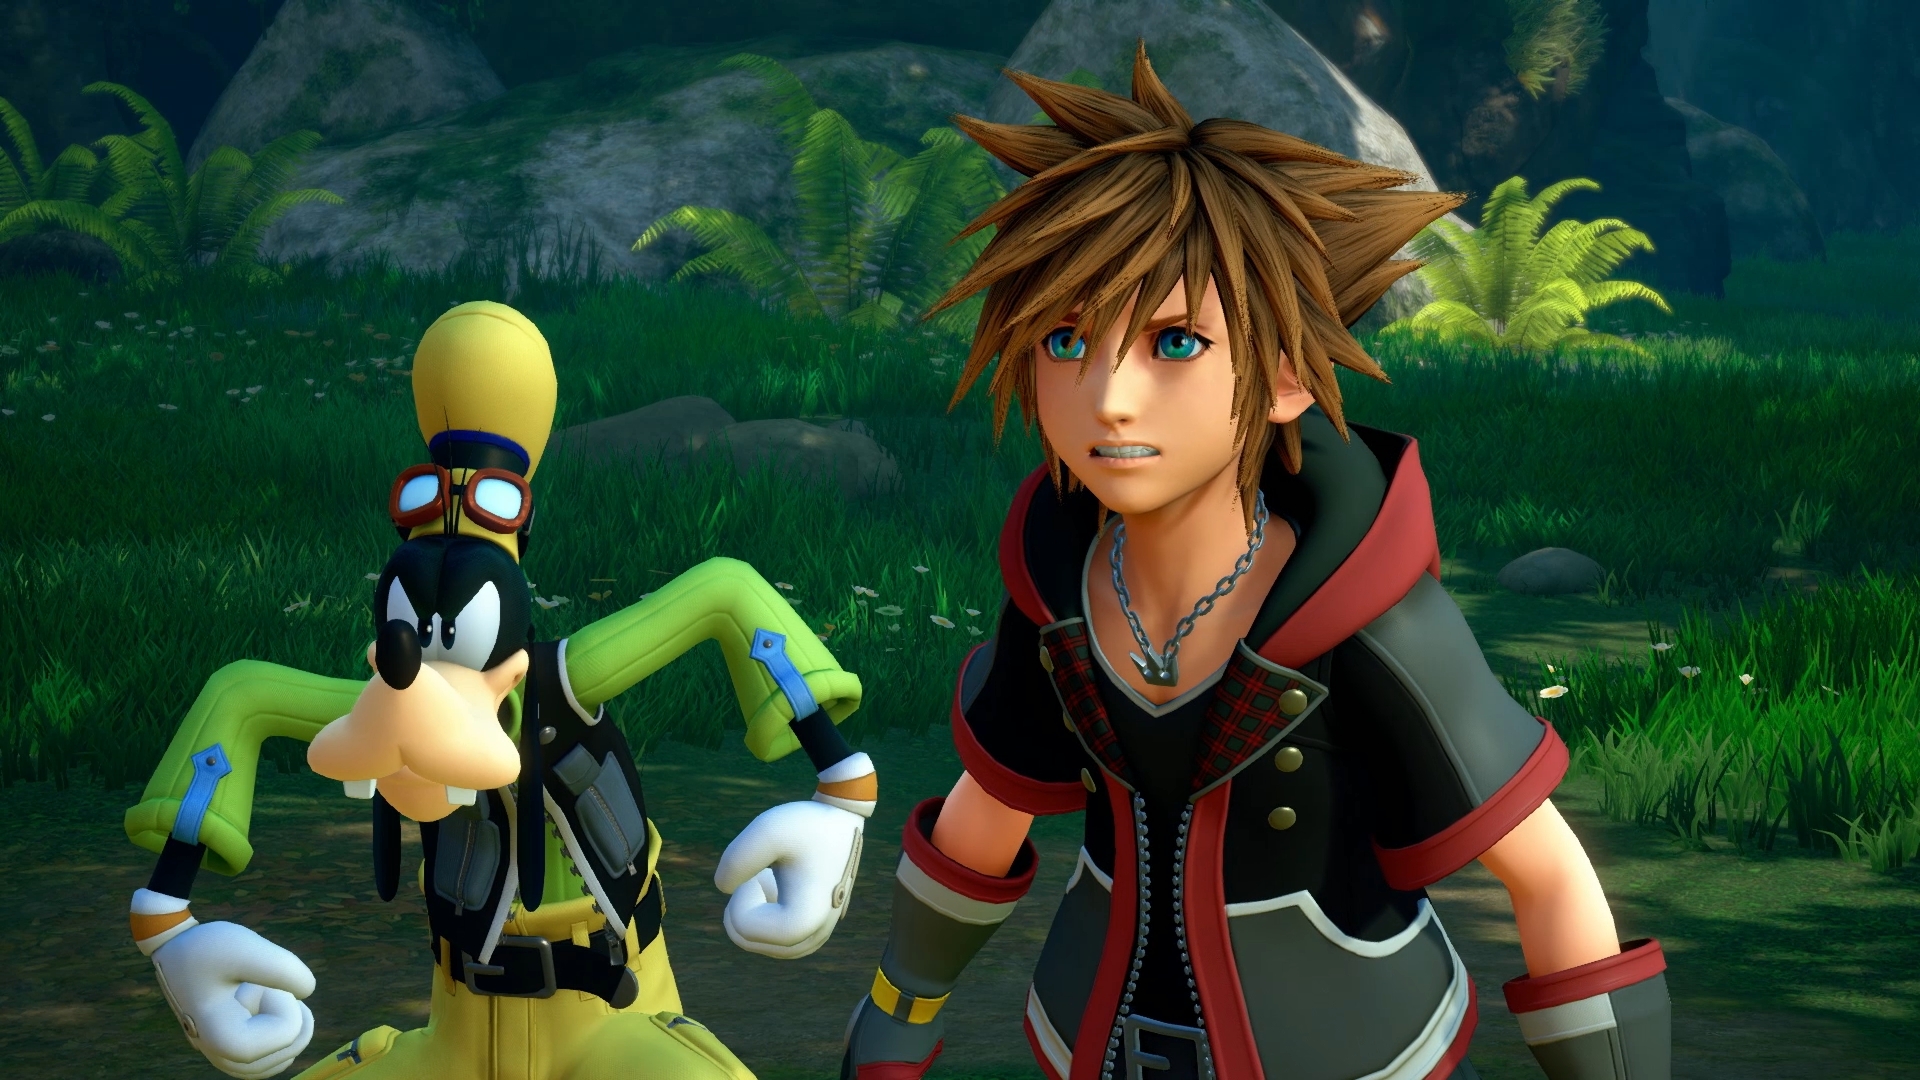 E3 2018: Kingdom Hearts 3 finally gets a release date